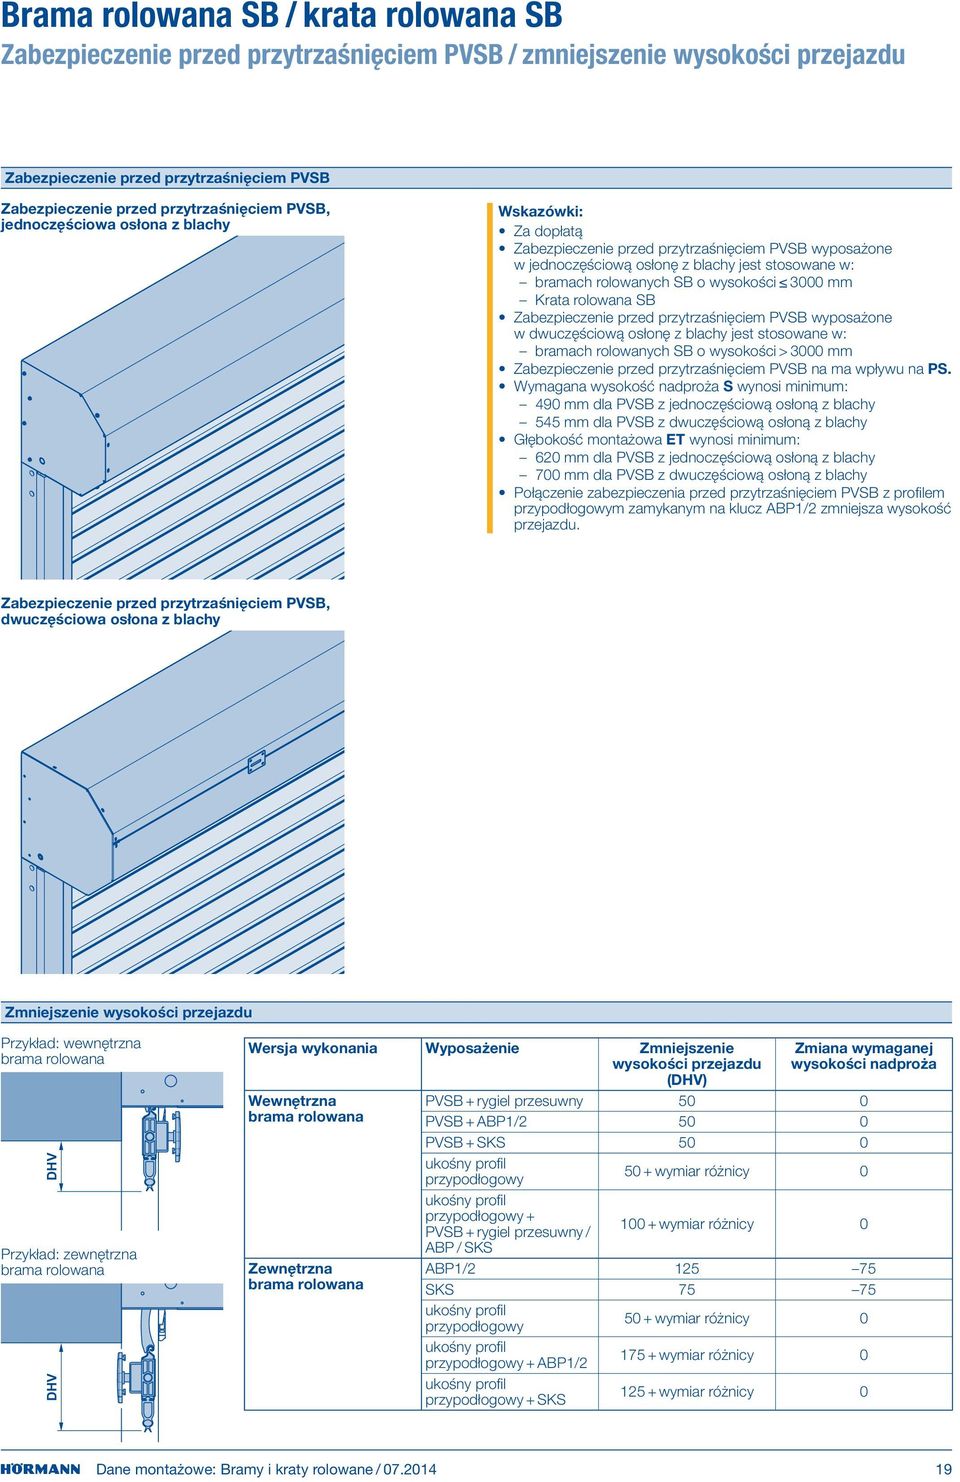 mm Krata rolowana SB Zabezpieczenie przed przytrzaśnięciem PVSB wyposażone w dwuczęściową osłonę z blachy jest stosowane w: bramach rolowanych SB o wysokości > mm Zabezpieczenie przed